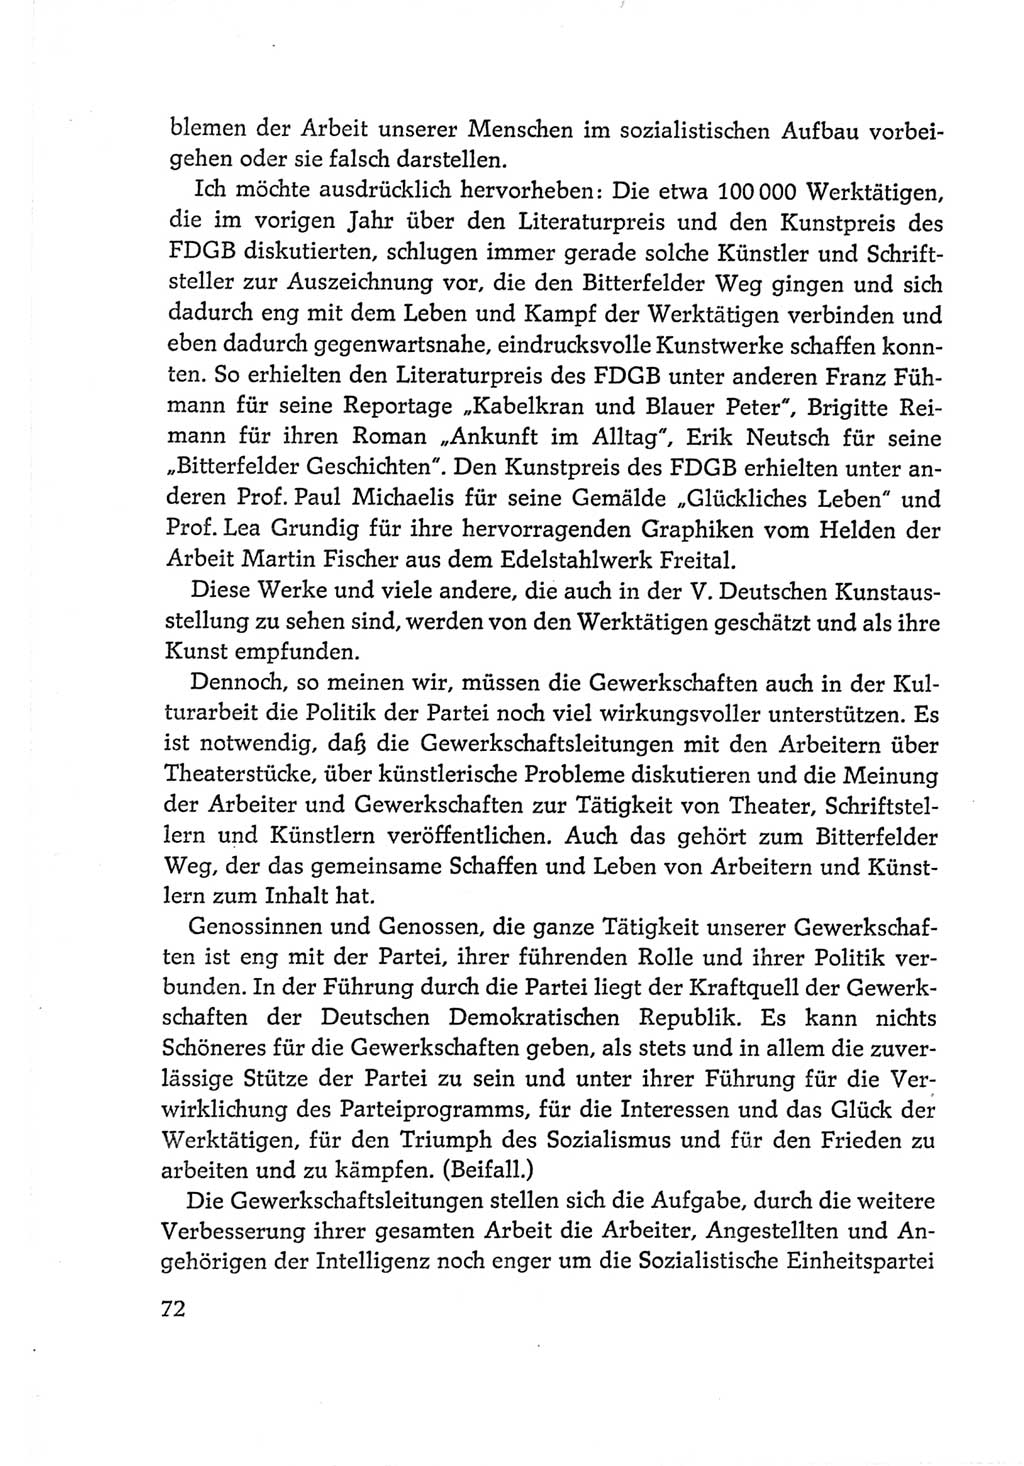 Protokoll der Verhandlungen des Ⅵ. Parteitages der Sozialistischen Einheitspartei Deutschlands (SED) [Deutsche Demokratische Republik (DDR)] 1963, Band Ⅱ, Seite 72 (Prot. Verh. Ⅵ. PT SED DDR 1963, Bd. Ⅱ, S. 72)